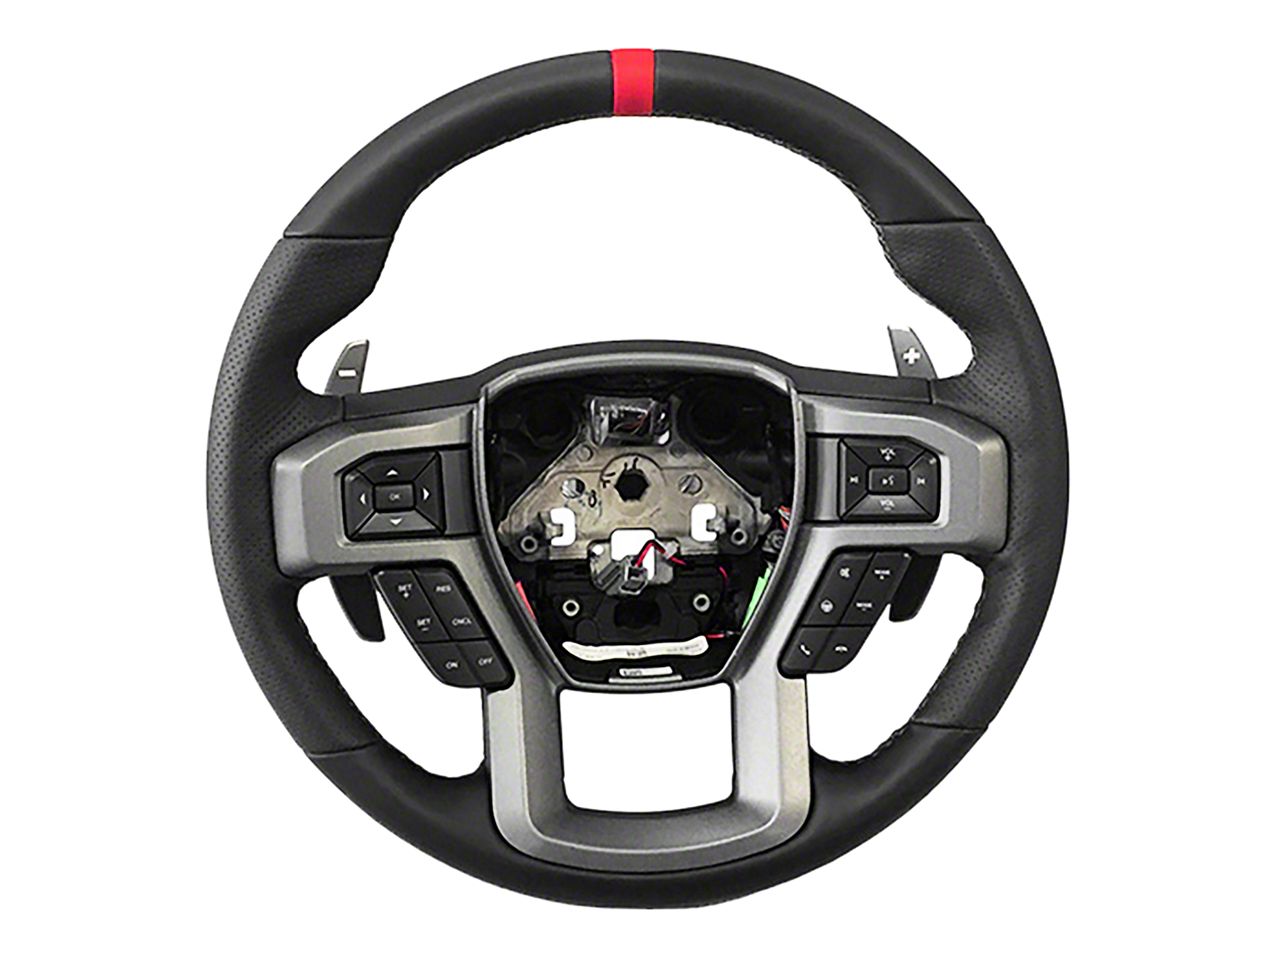 Ram 1500 Steering Wheels & Accessories 2002-2008